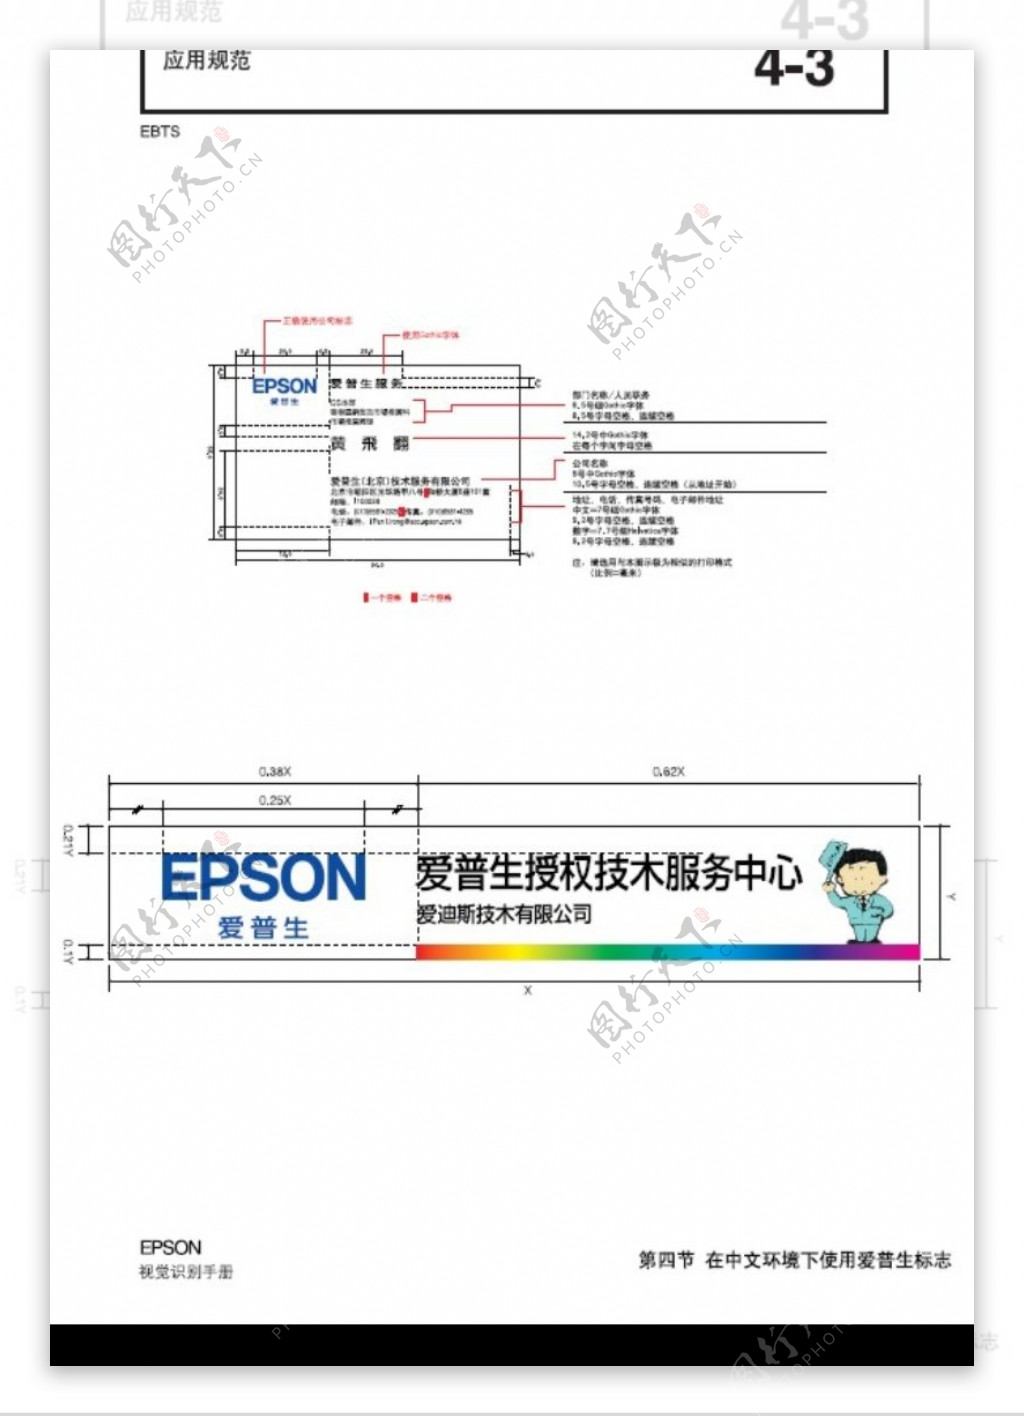 EPSON0061